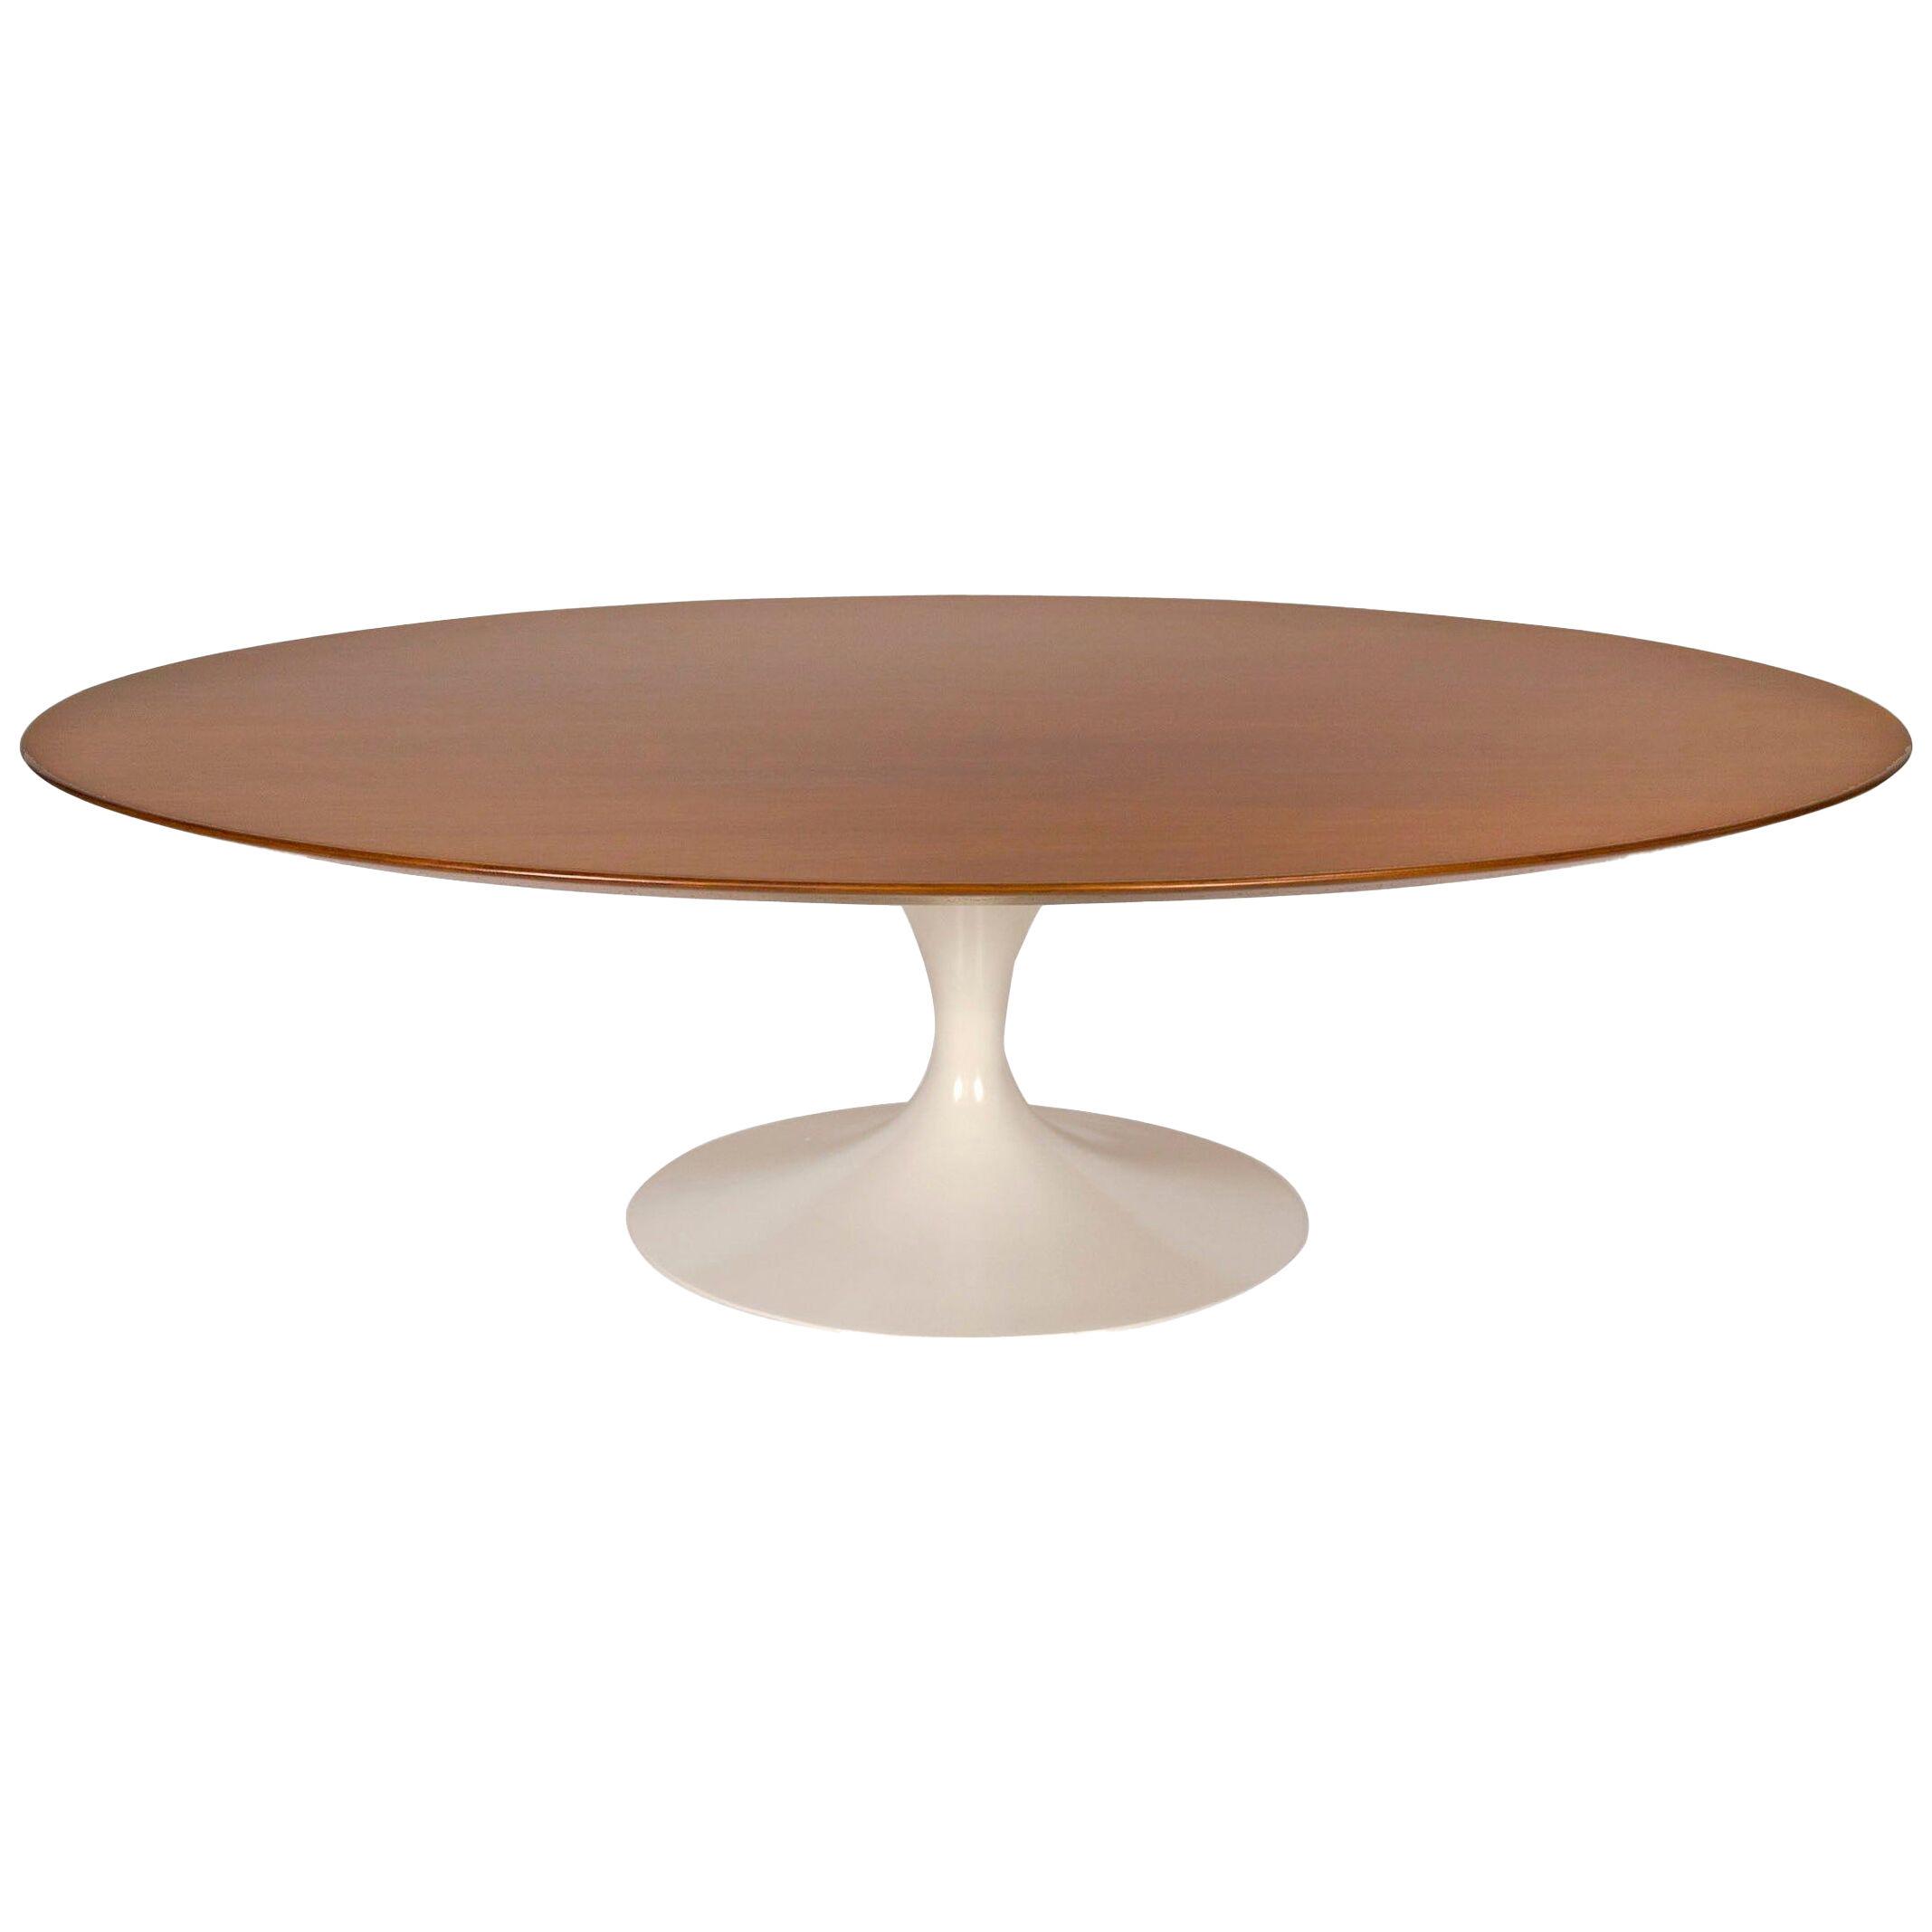 1960s Eero Saarinen Oval Walnut Coffee Table for Knoll